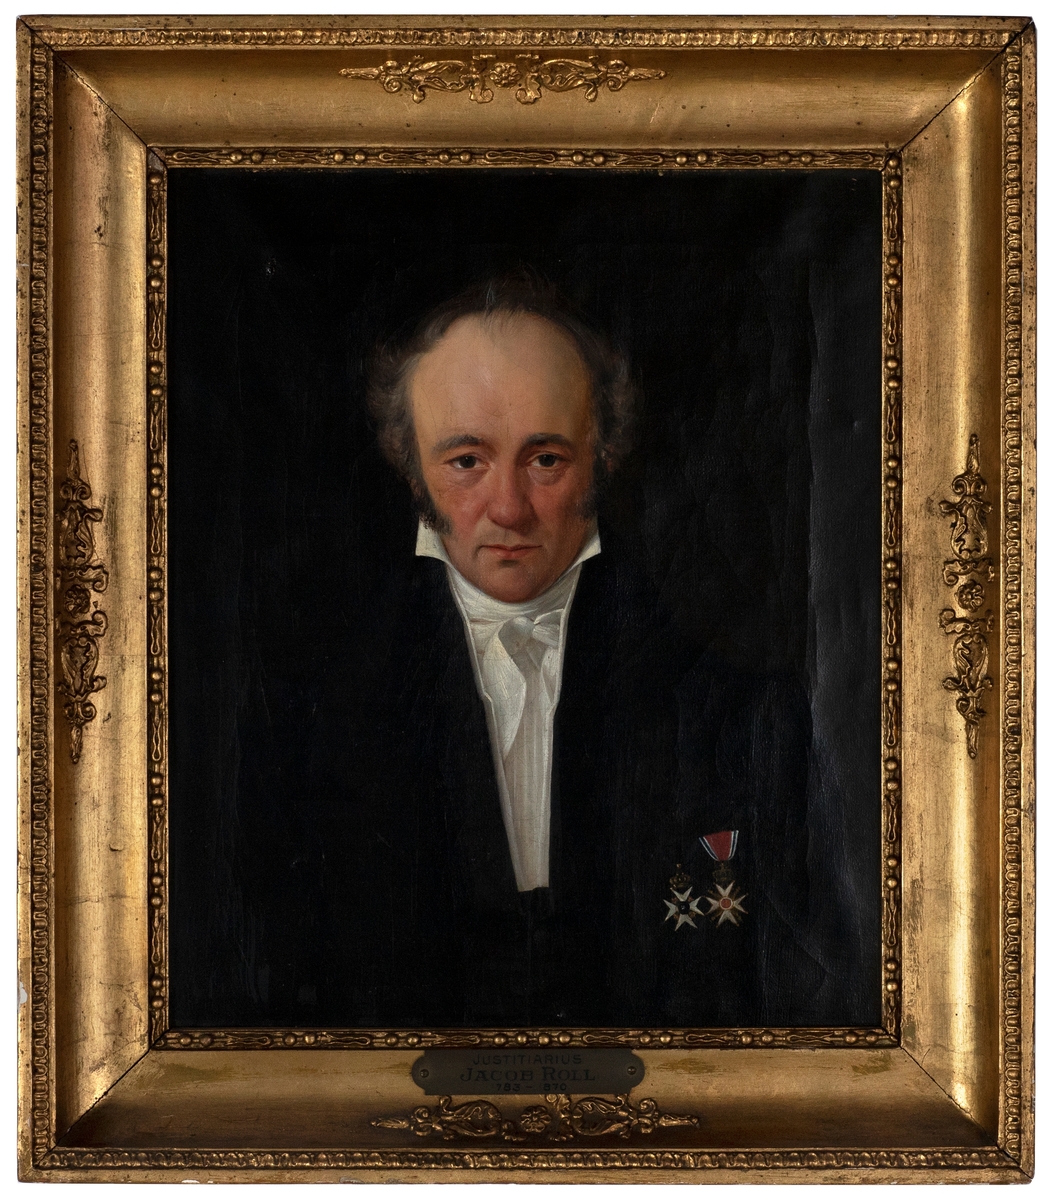 Portrett av en mann i svart drakt med hvitt halstøy og hvit skjorte. Han bærer to ordener. Ansiktet har en rødmusset hudfarge.